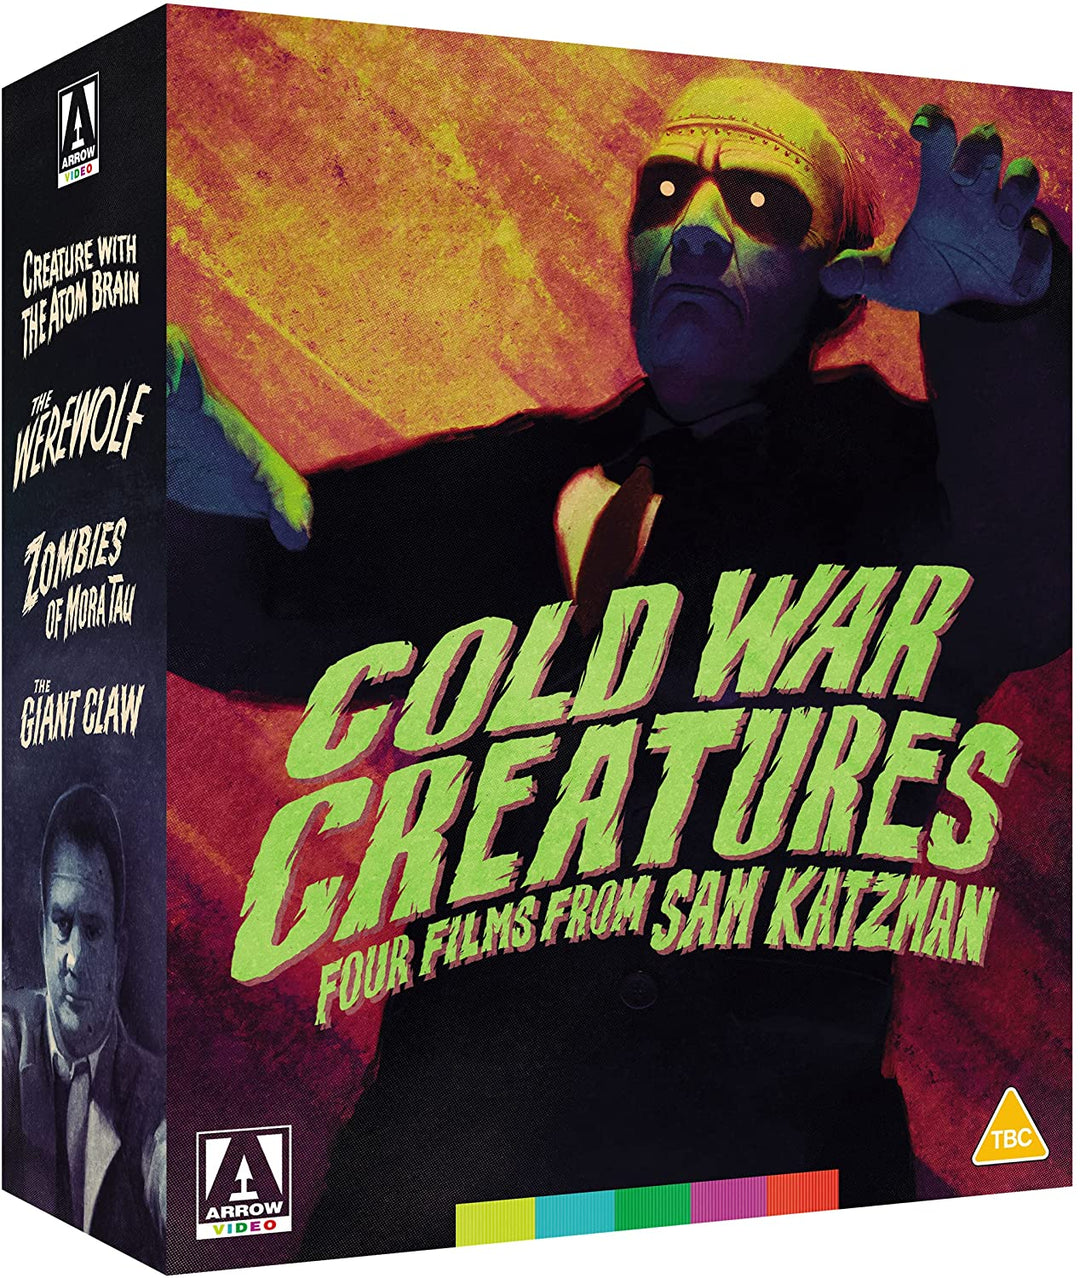 Kreaturen des Kalten Krieges: Vier Filme von Sam Katzman [Blu-ray]